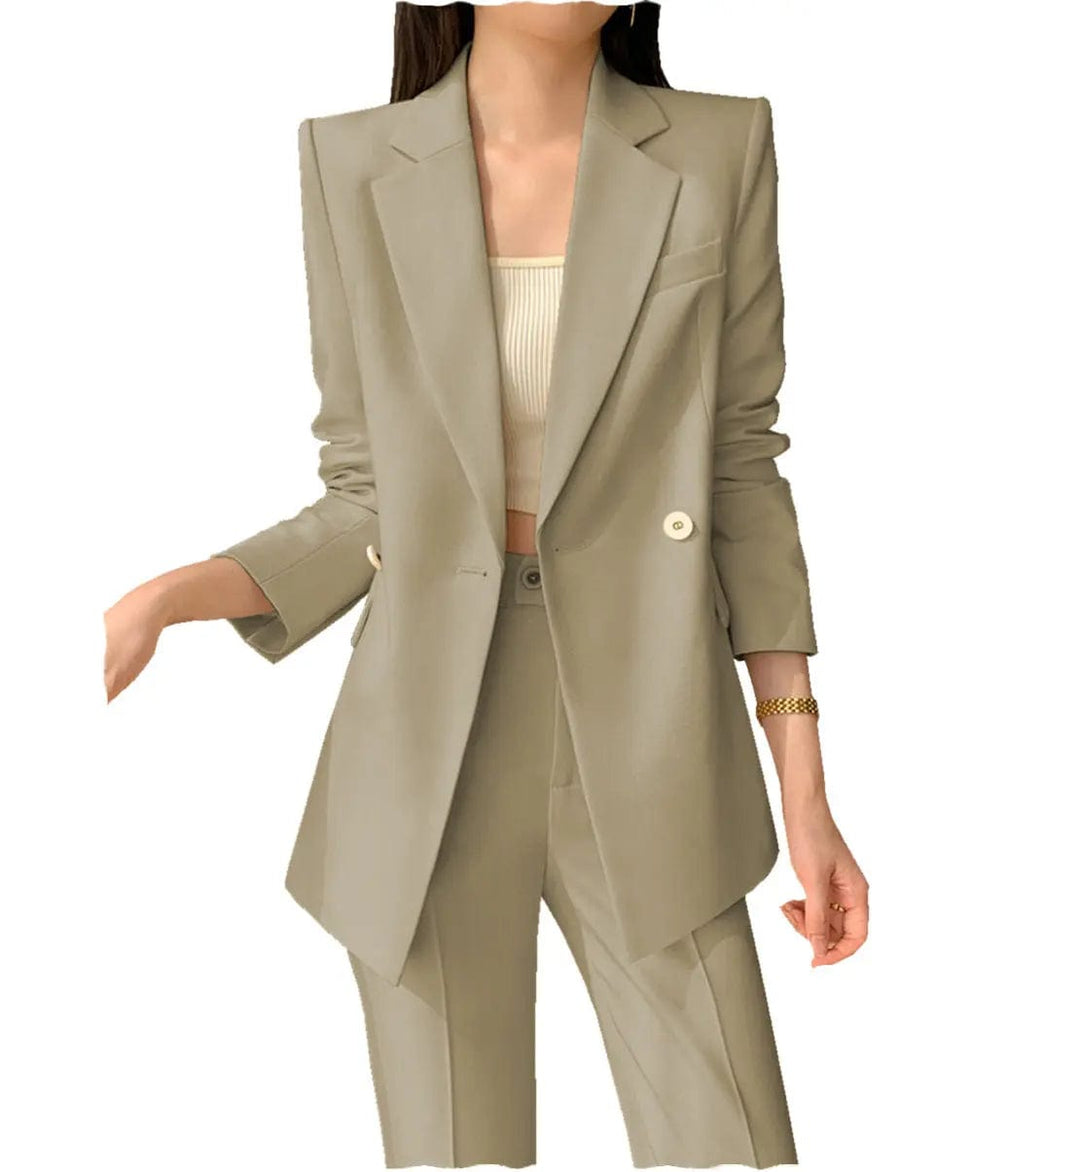 solovedress 2 Pieces Notch Lapel Women Suit